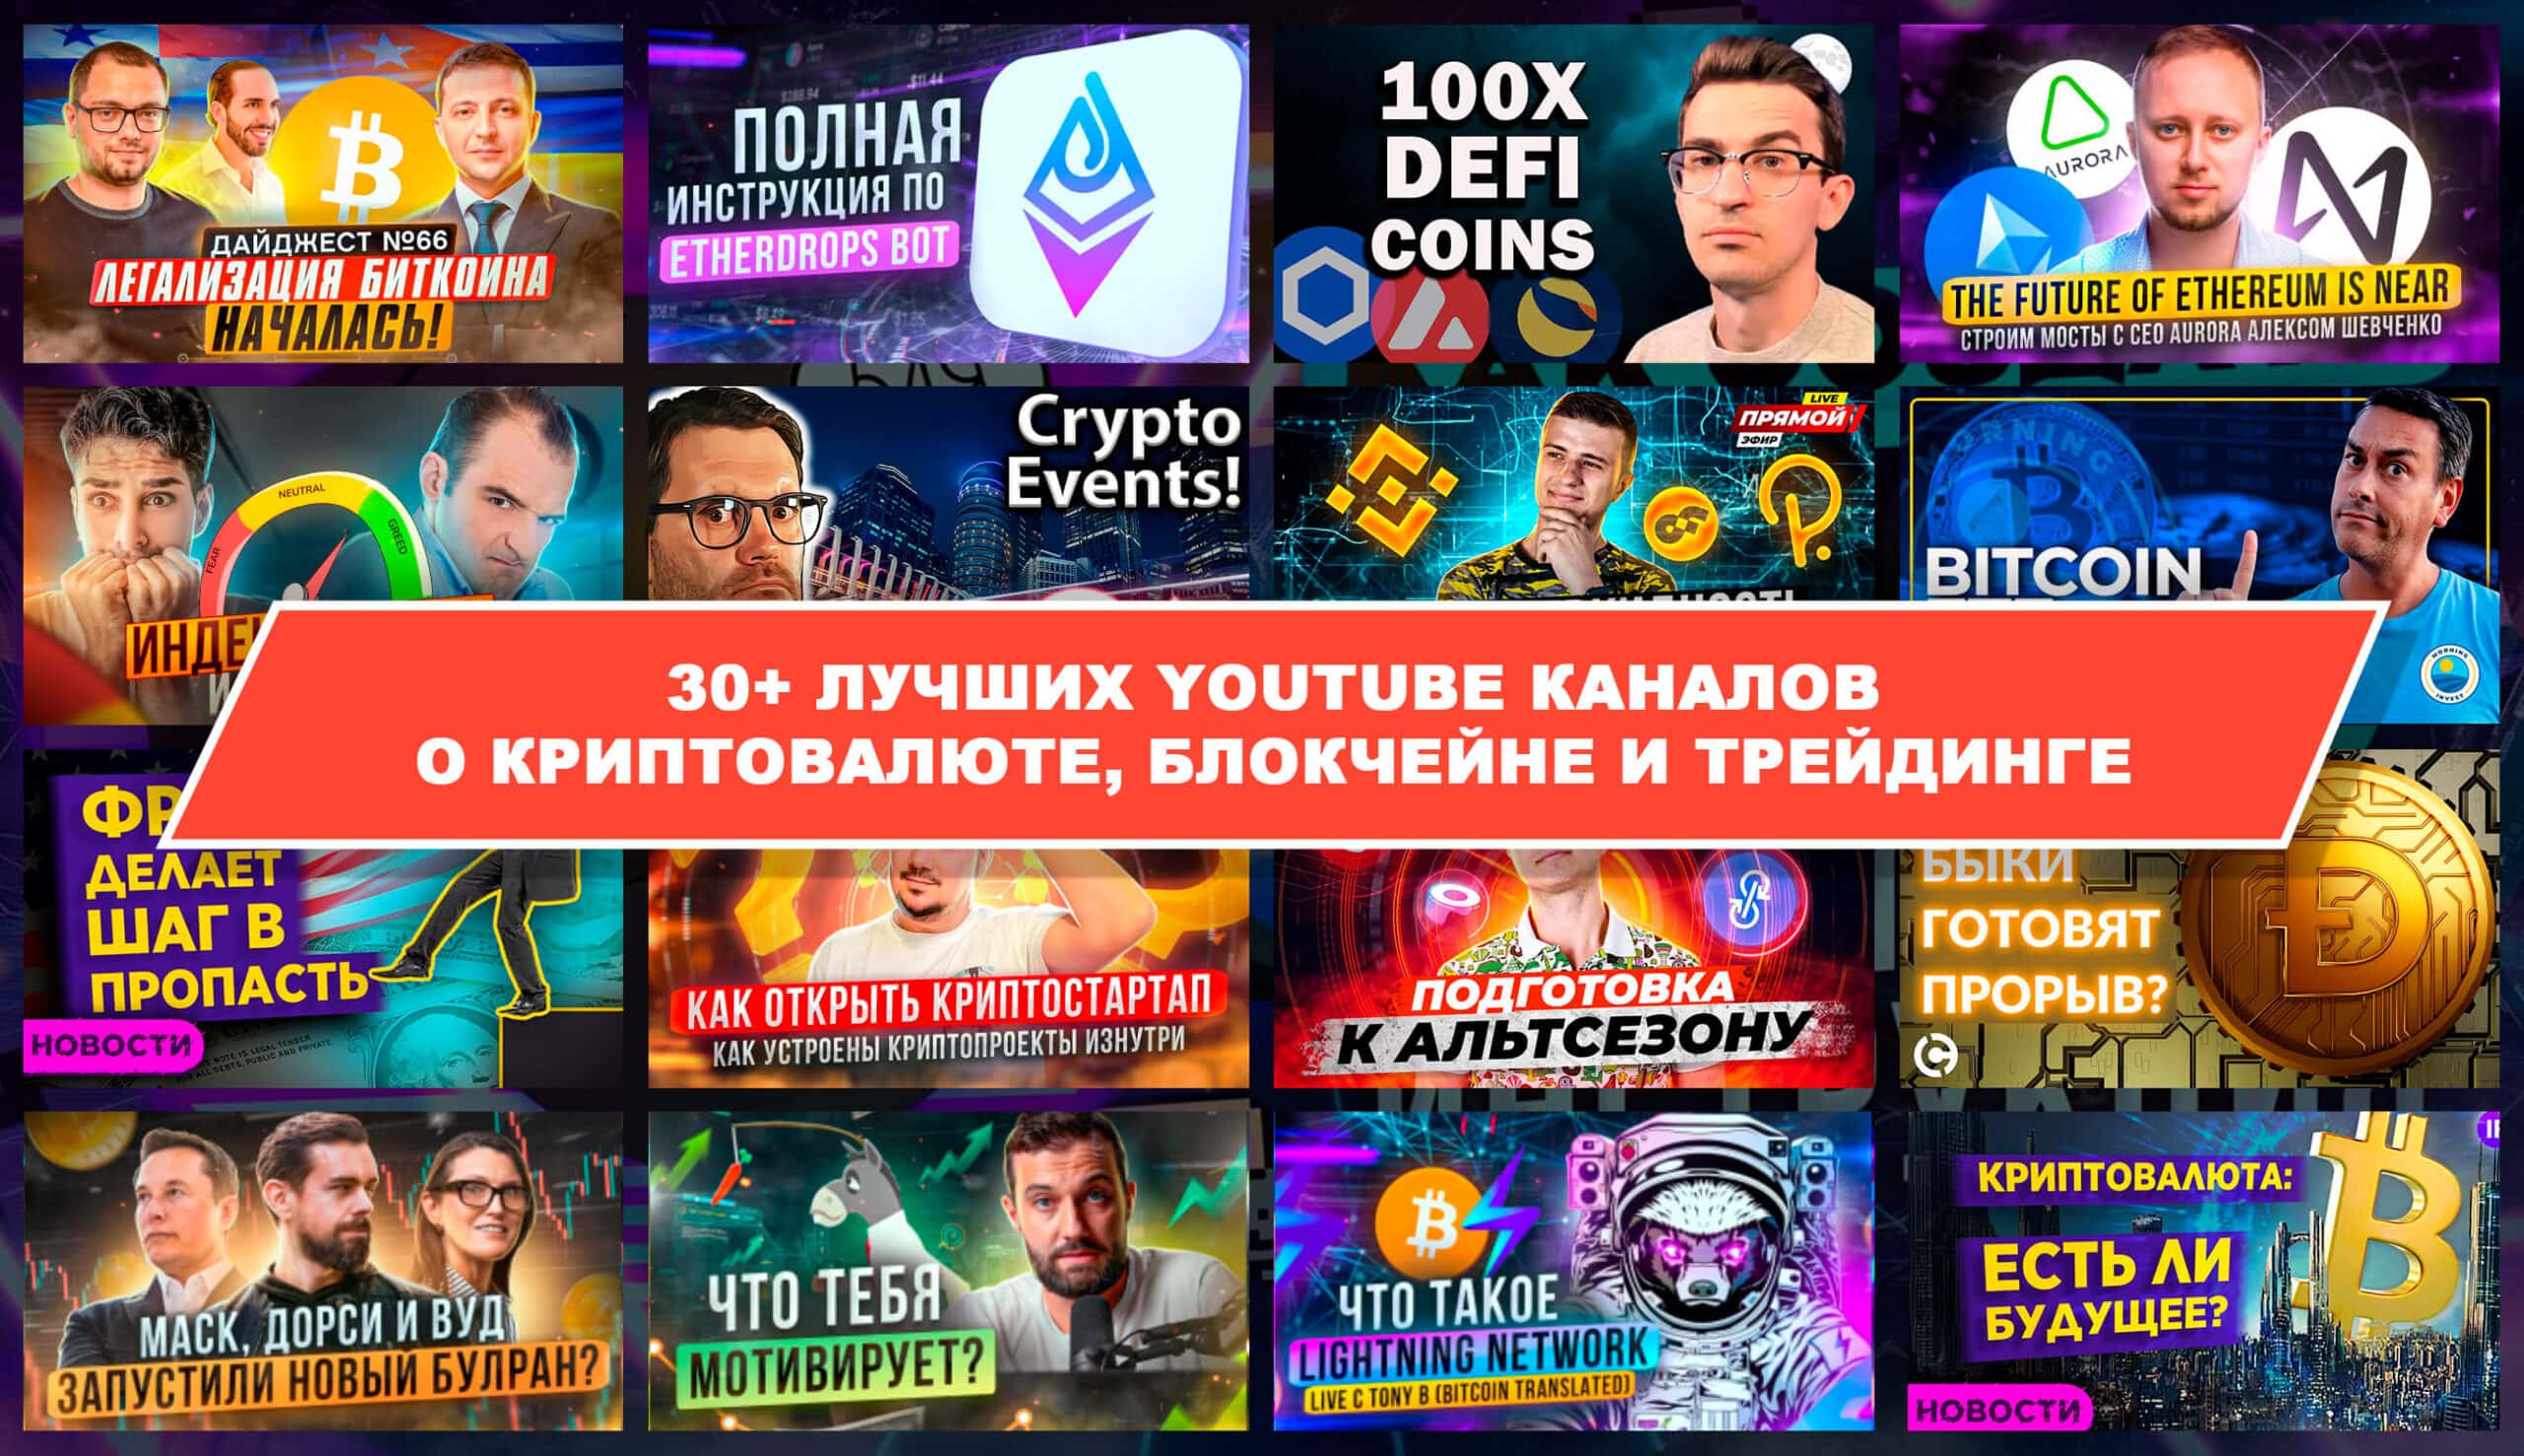 30+ лучших YouTube каналов о криптовалюте, блокчейне и трейдинге. Заглавный коллаж статьи.